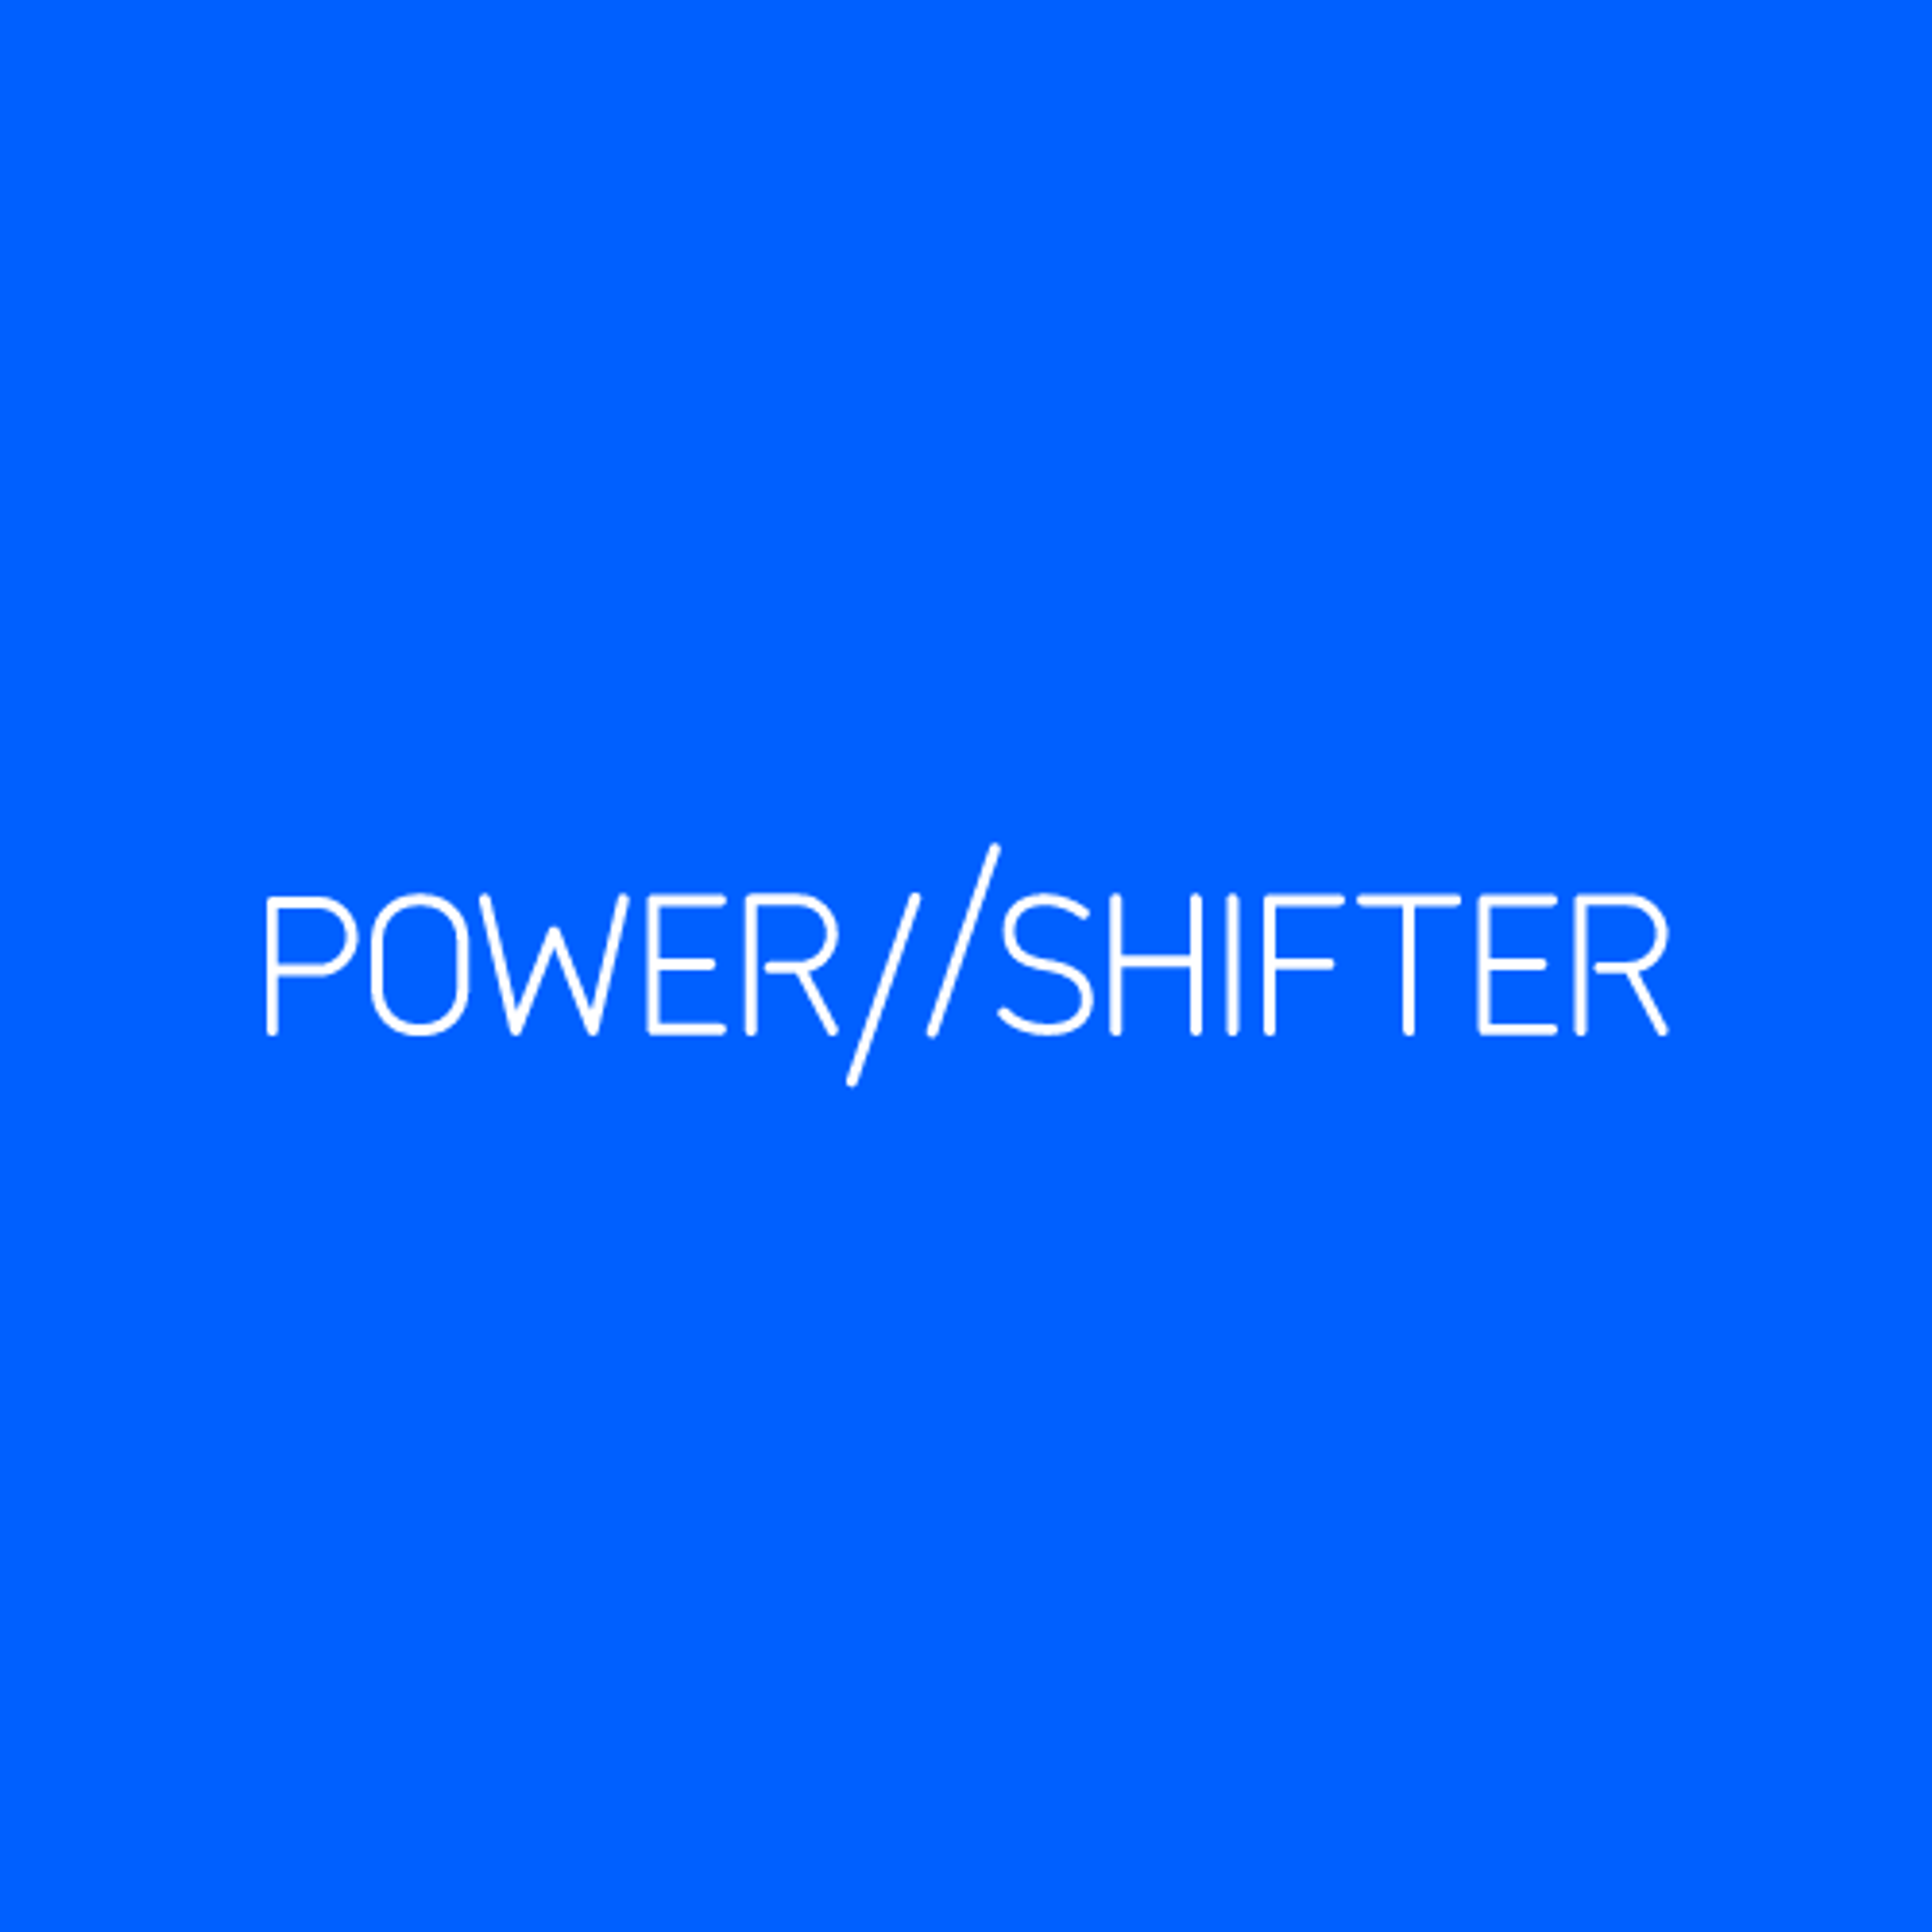 POWER SHIFTER Digital